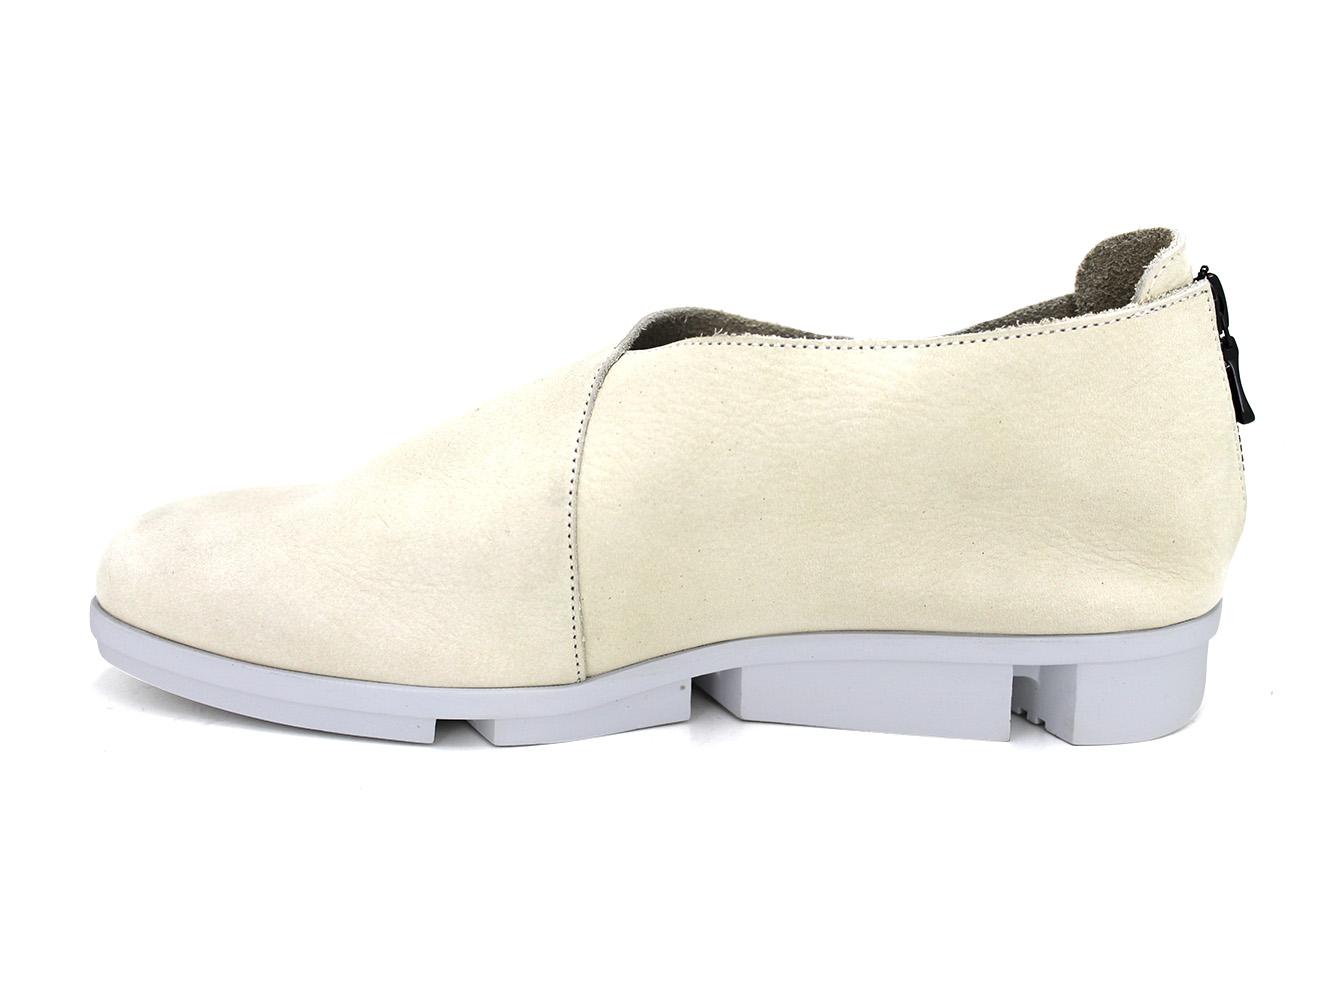 Arche Kymene Women's Slip-on Shoe Ivory : The Shoe Spa